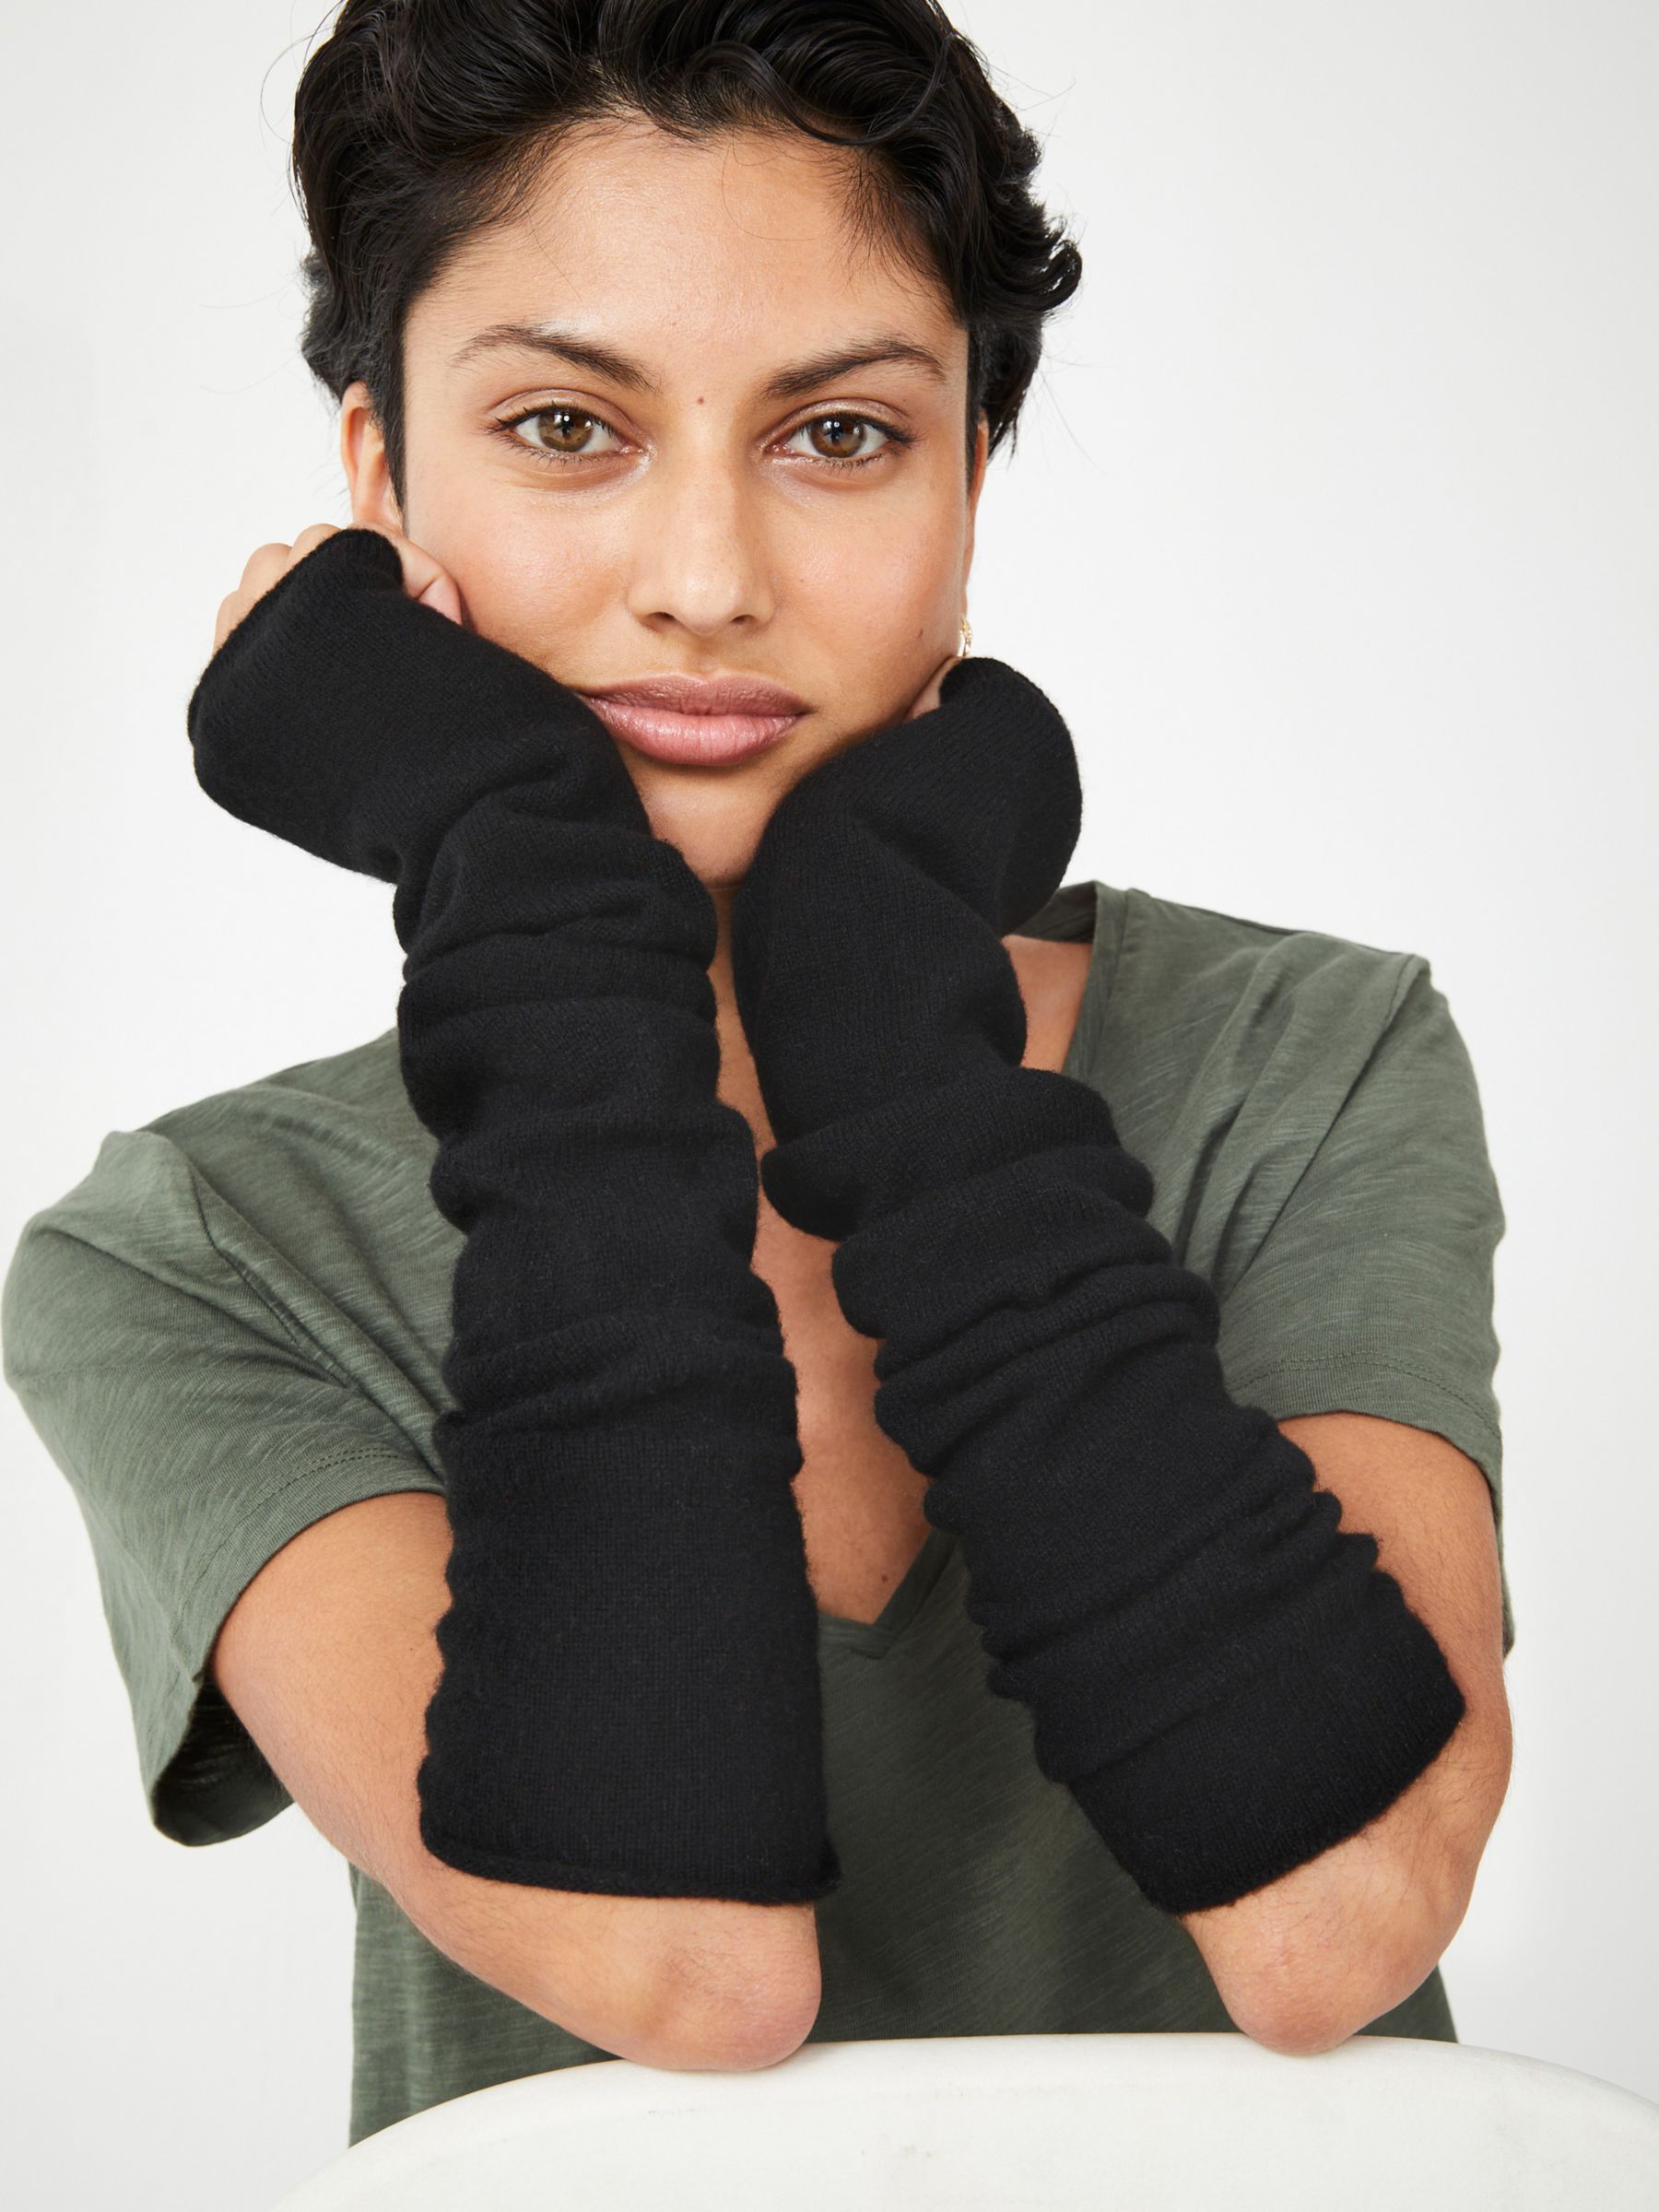 HUSH Cashmere Fingerless Gloves, Black, One Size